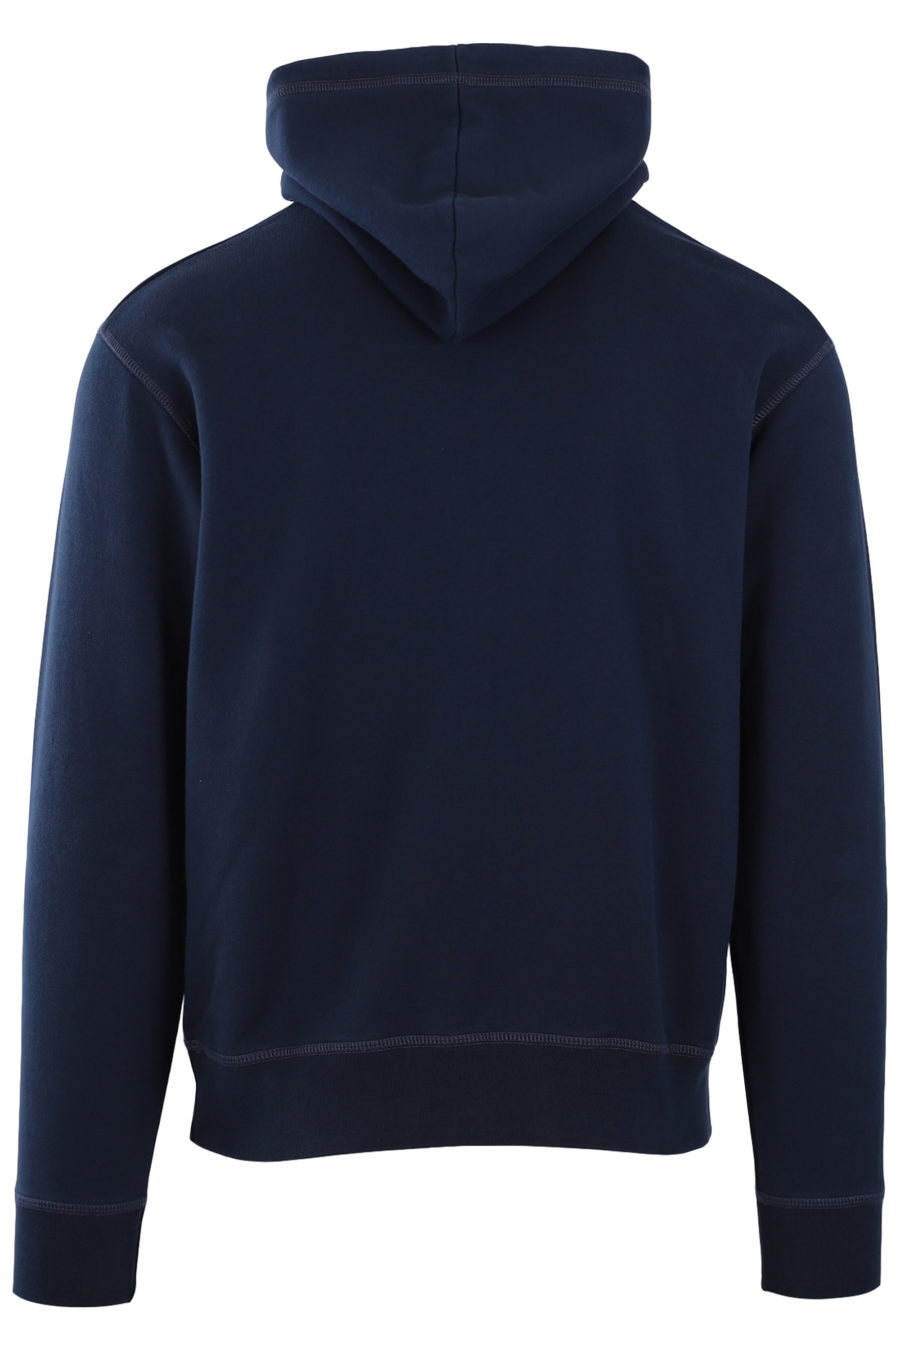 Blue hooded sweatshirt with logo "Ceresio 9 Milano" - c1d3b596a892ddaaff75fc60786b164e8cafa1f0